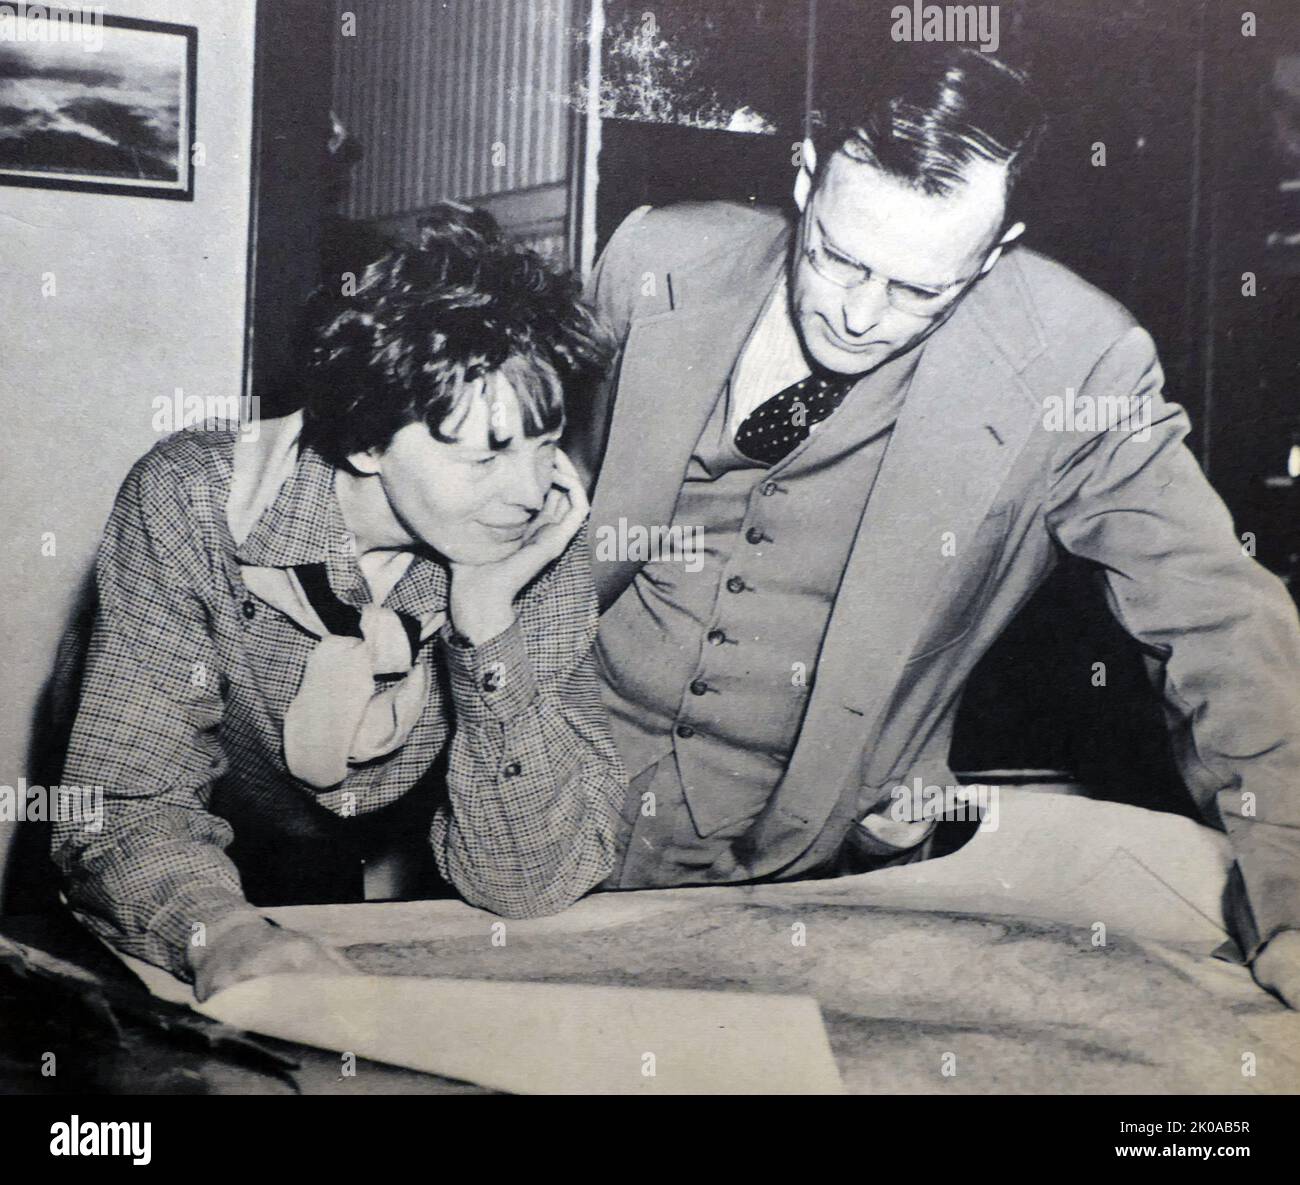 Amelia Mary Earhart mit ihrem Mann George Palmer Putnam. Amelia Mary Earhart (geboren am 24. Juli 1897 - verschwunden am 2. Juli 1937, für tot erklärt am 5. Januar 1939) war eine amerikanische Pionierin der Luftfahrt und Autorin. Earhart war die erste weibliche Fliegerin, die solo über den Atlantik flog. George Palmer Putnam (7. September 1887 - 4. Januar 1950) war ein amerikanischer Verleger, Autor und Forscher und einer der erfolgreichsten Promoter in den Vereinigten Staaten während des Jahres 1930s Stockfoto